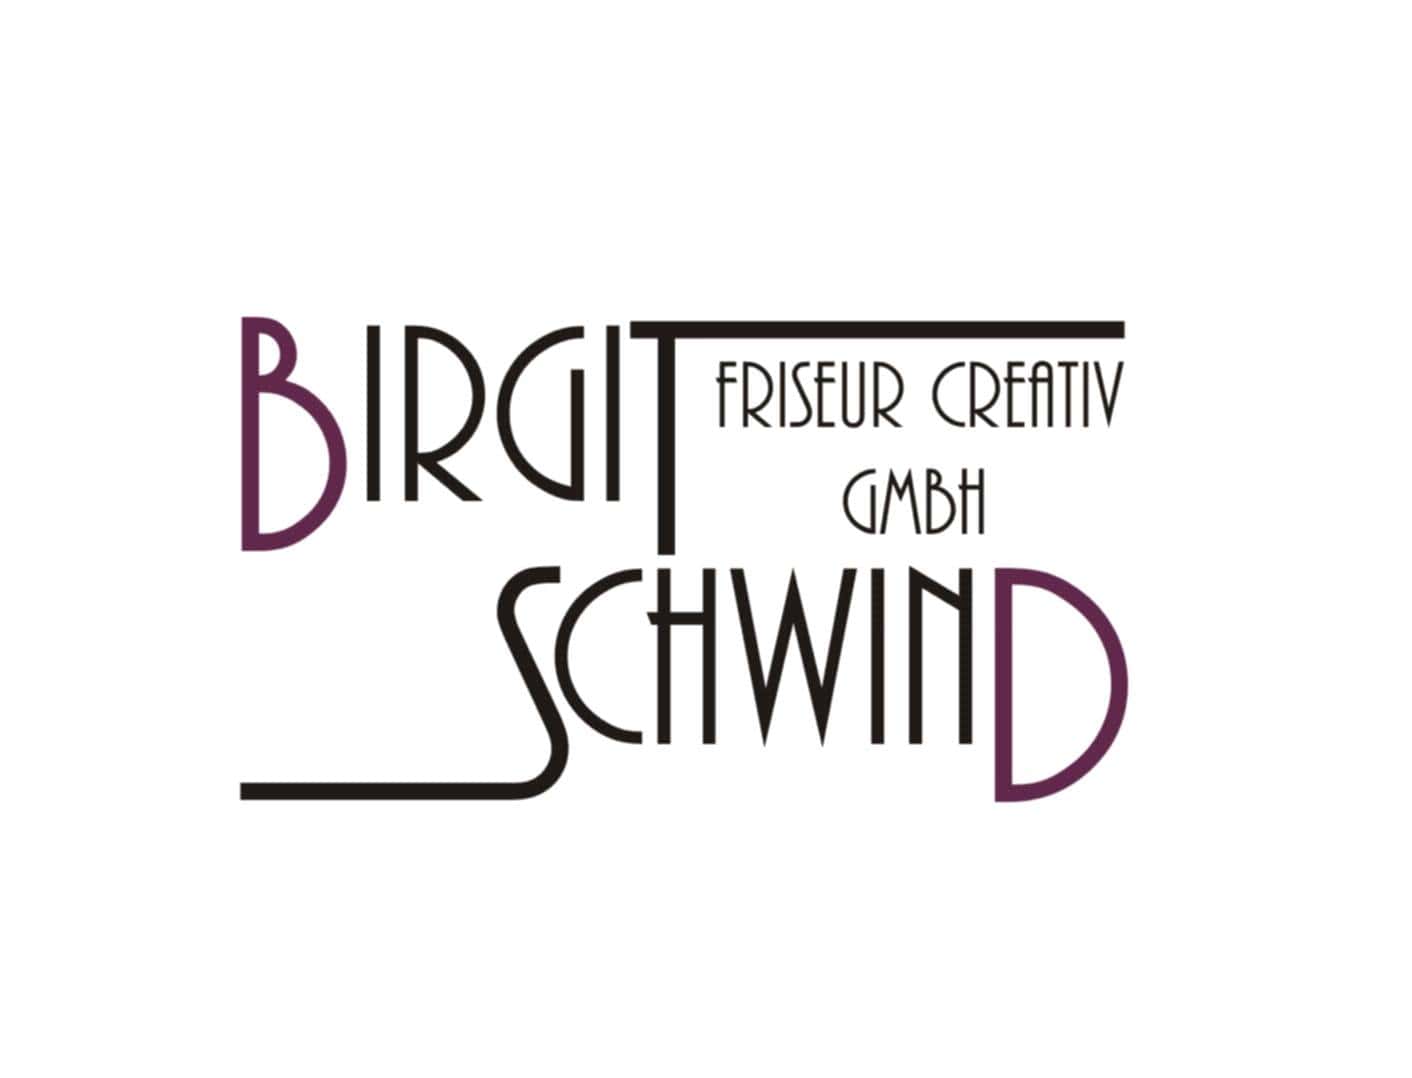 Birgit Schwind Friseur Creativ  